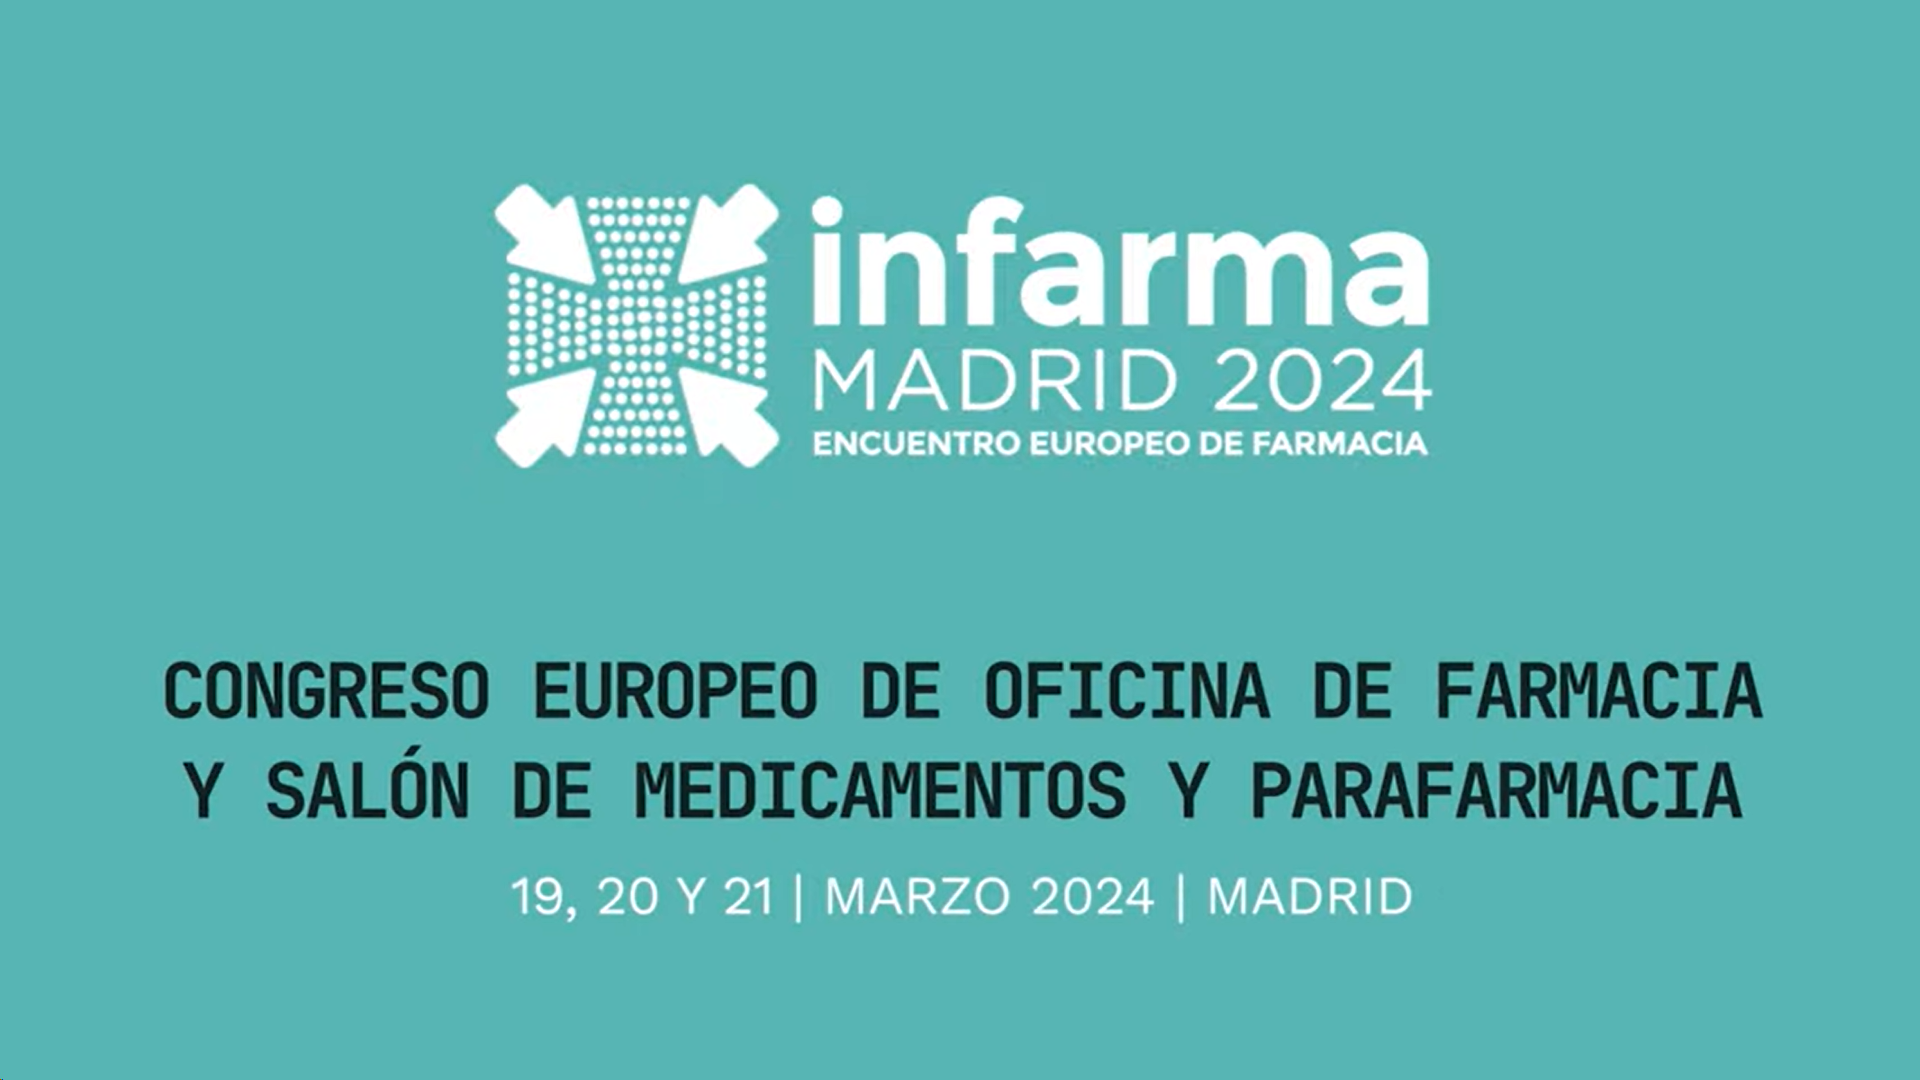 Infarma Madrid 2024 abre sus puertas y se consolida como el congreso y salón de referencia de la farmacia